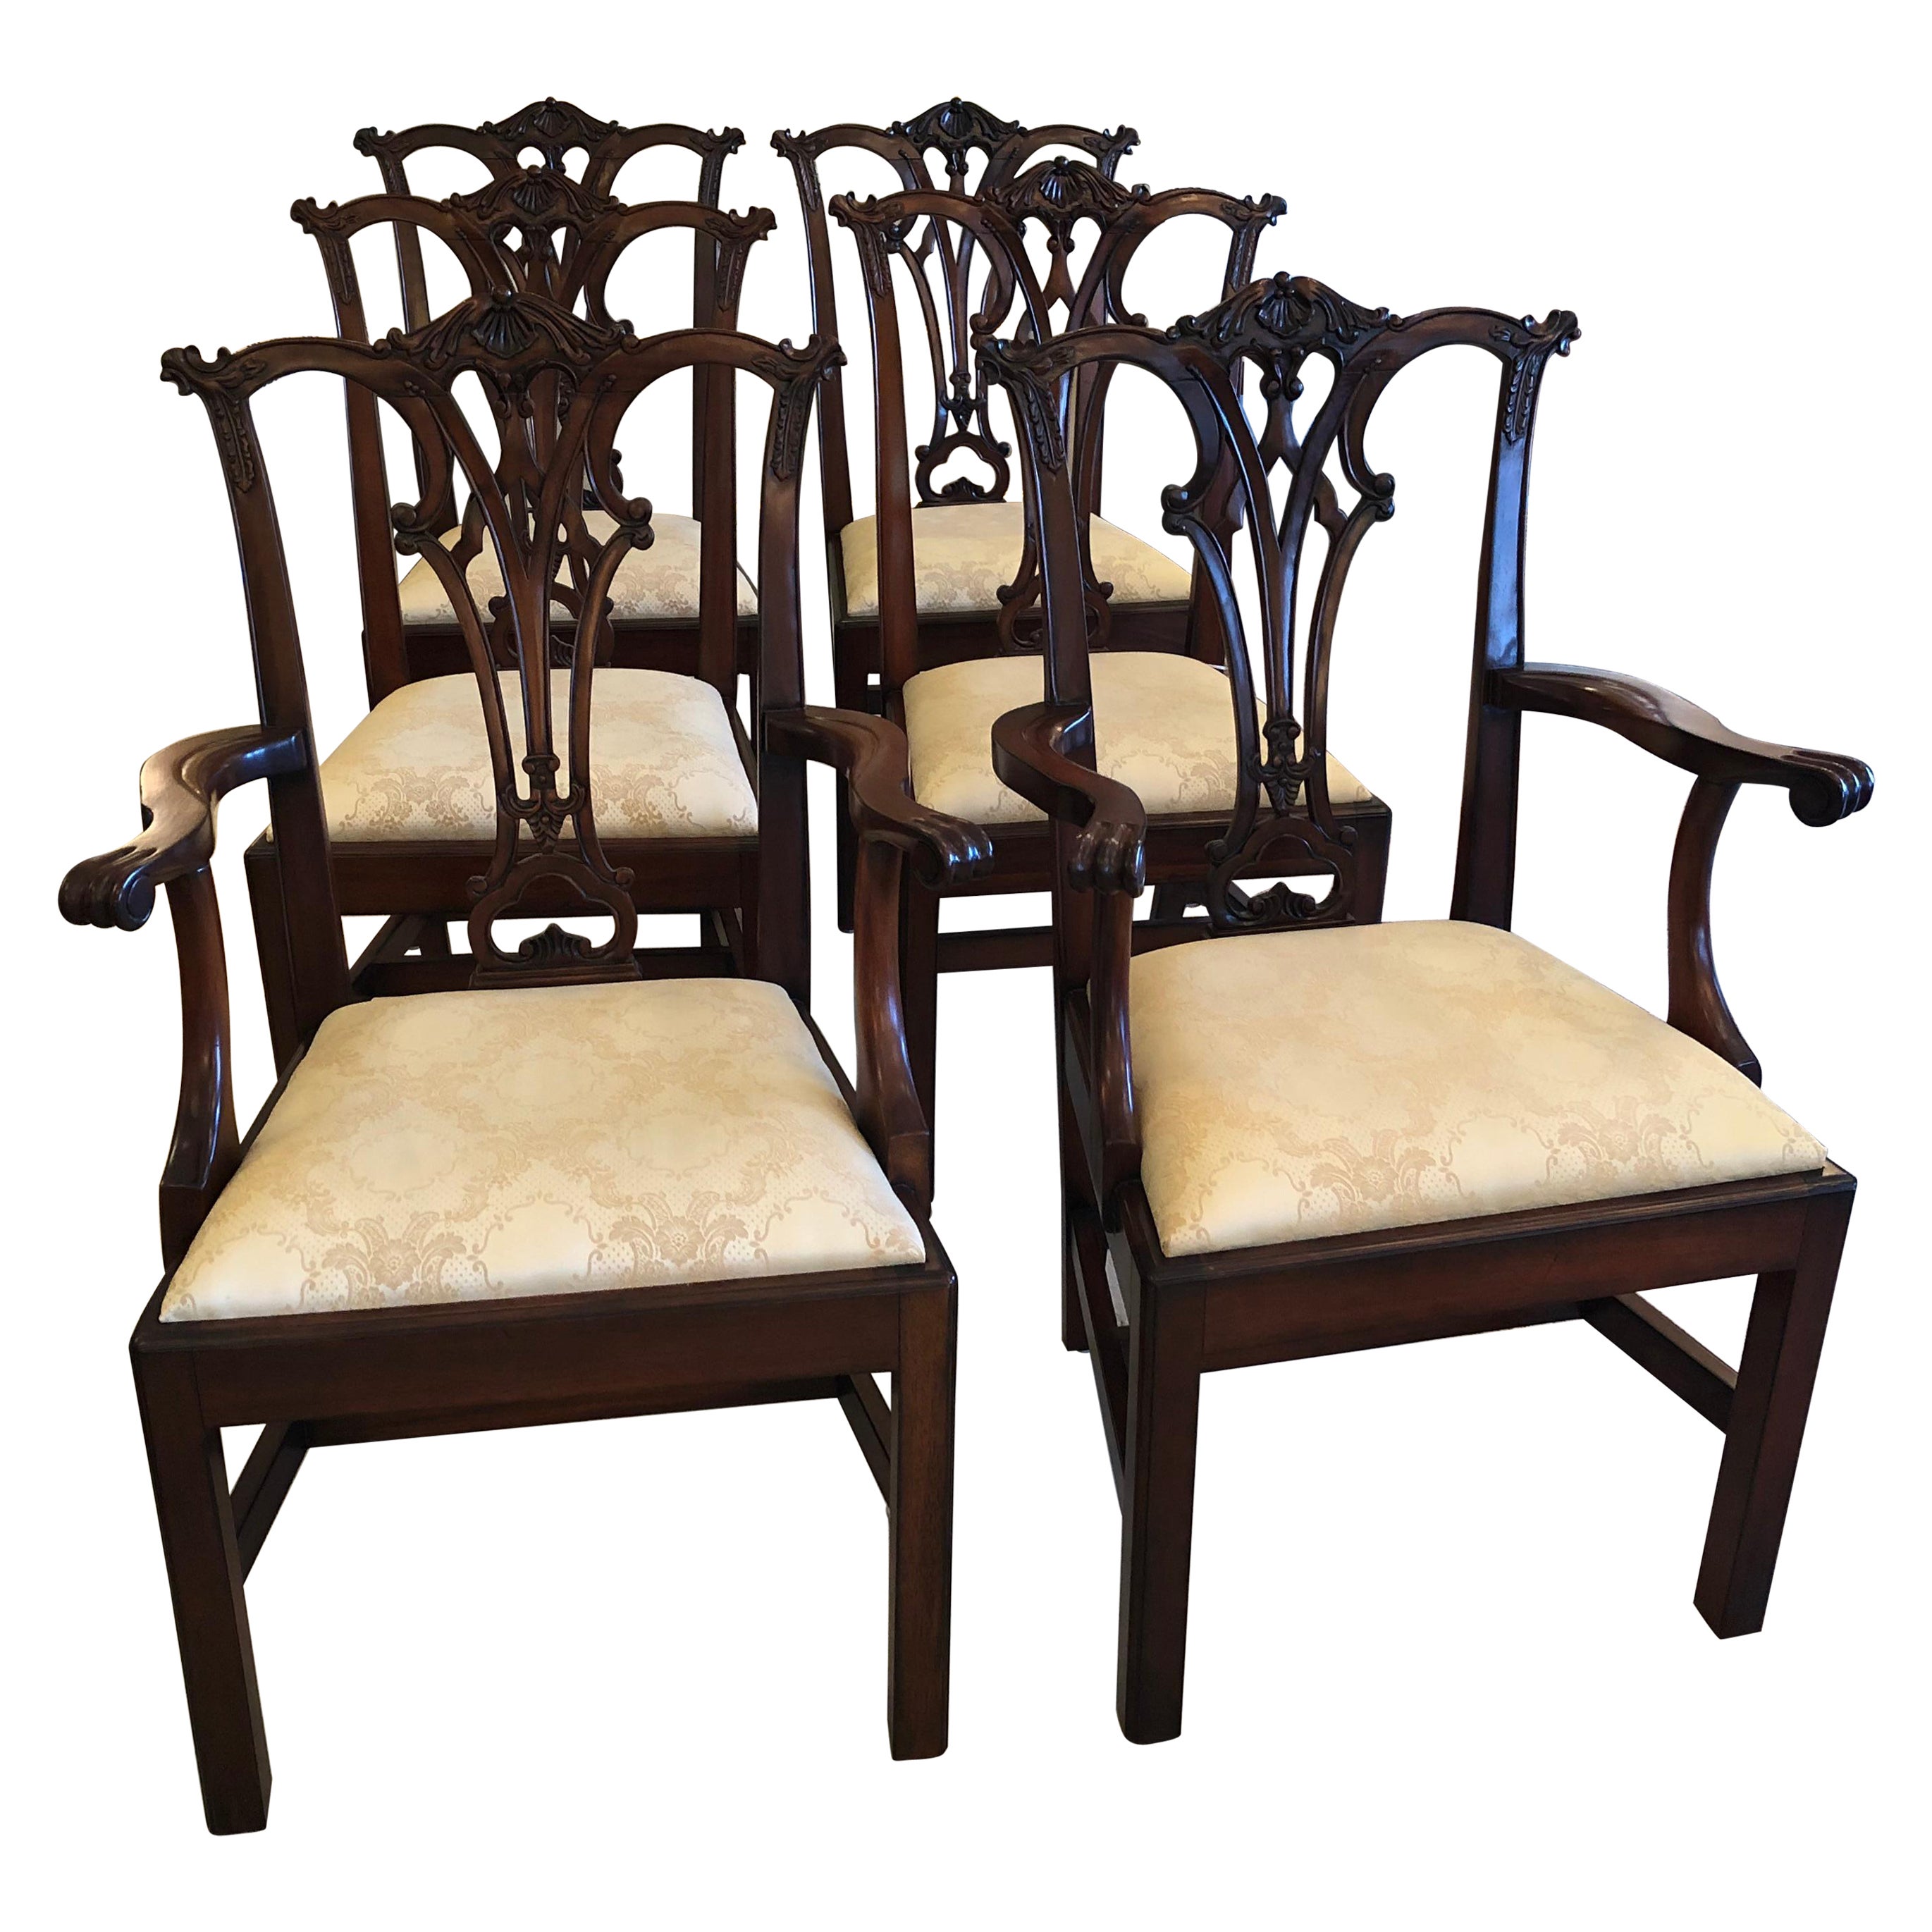 Beeindruckendes Regal-Set aus 6 Esszimmerstühlen im Chippendale-Stil